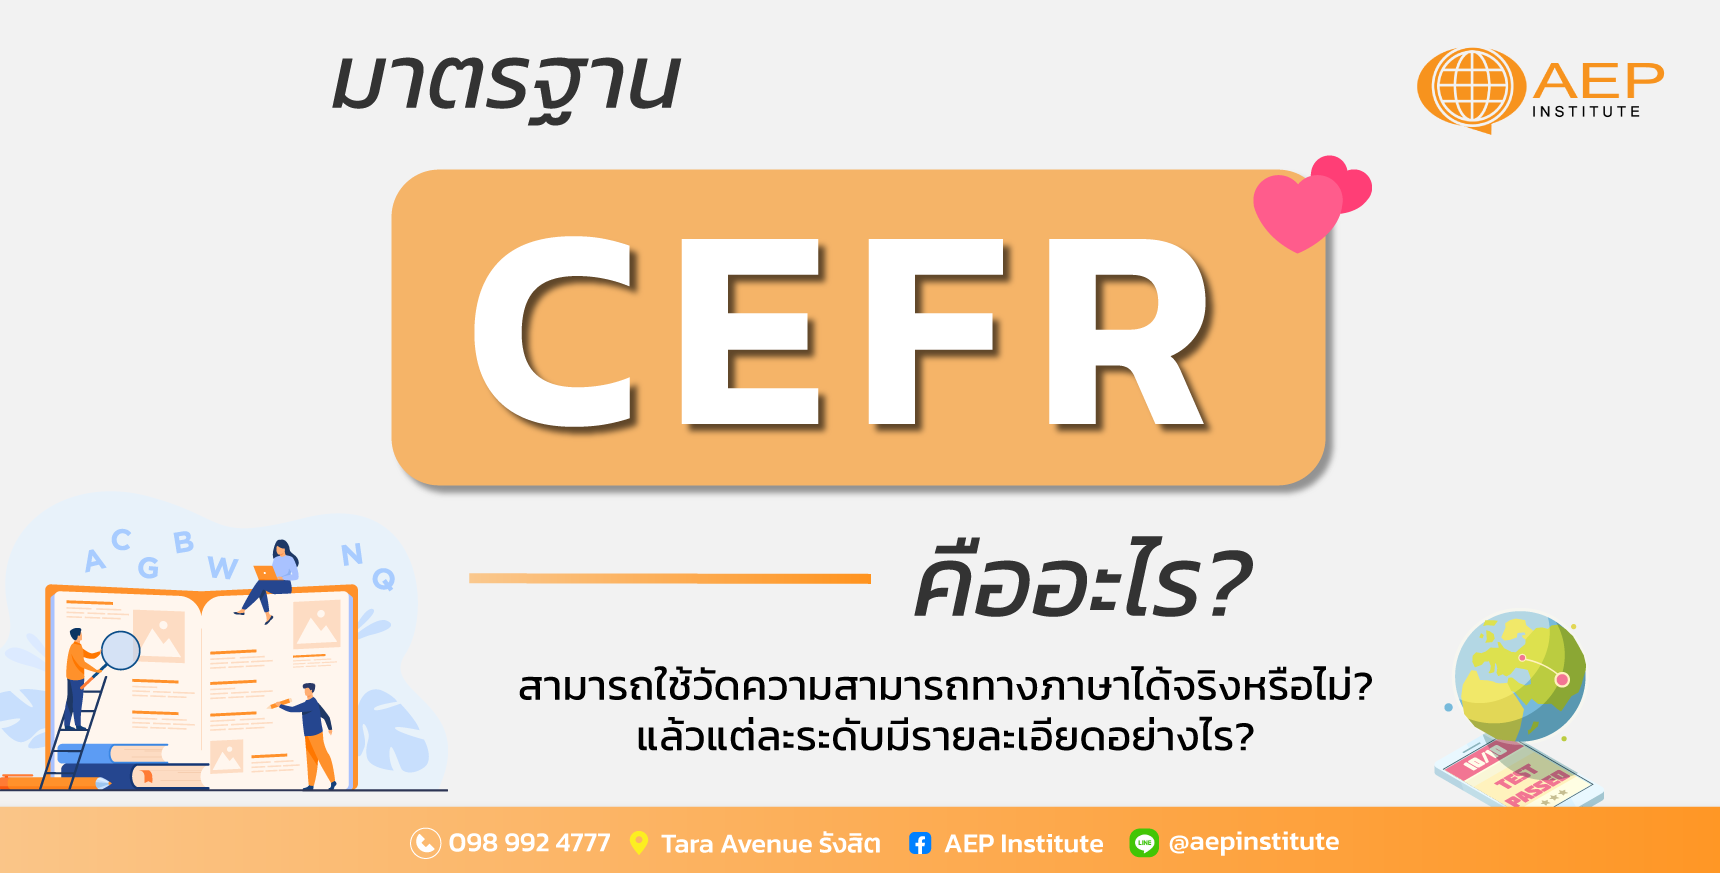 CEFR คืออะไร? สามารถวัดความสามารถทางภาษาได้จริงหรือไม่? 